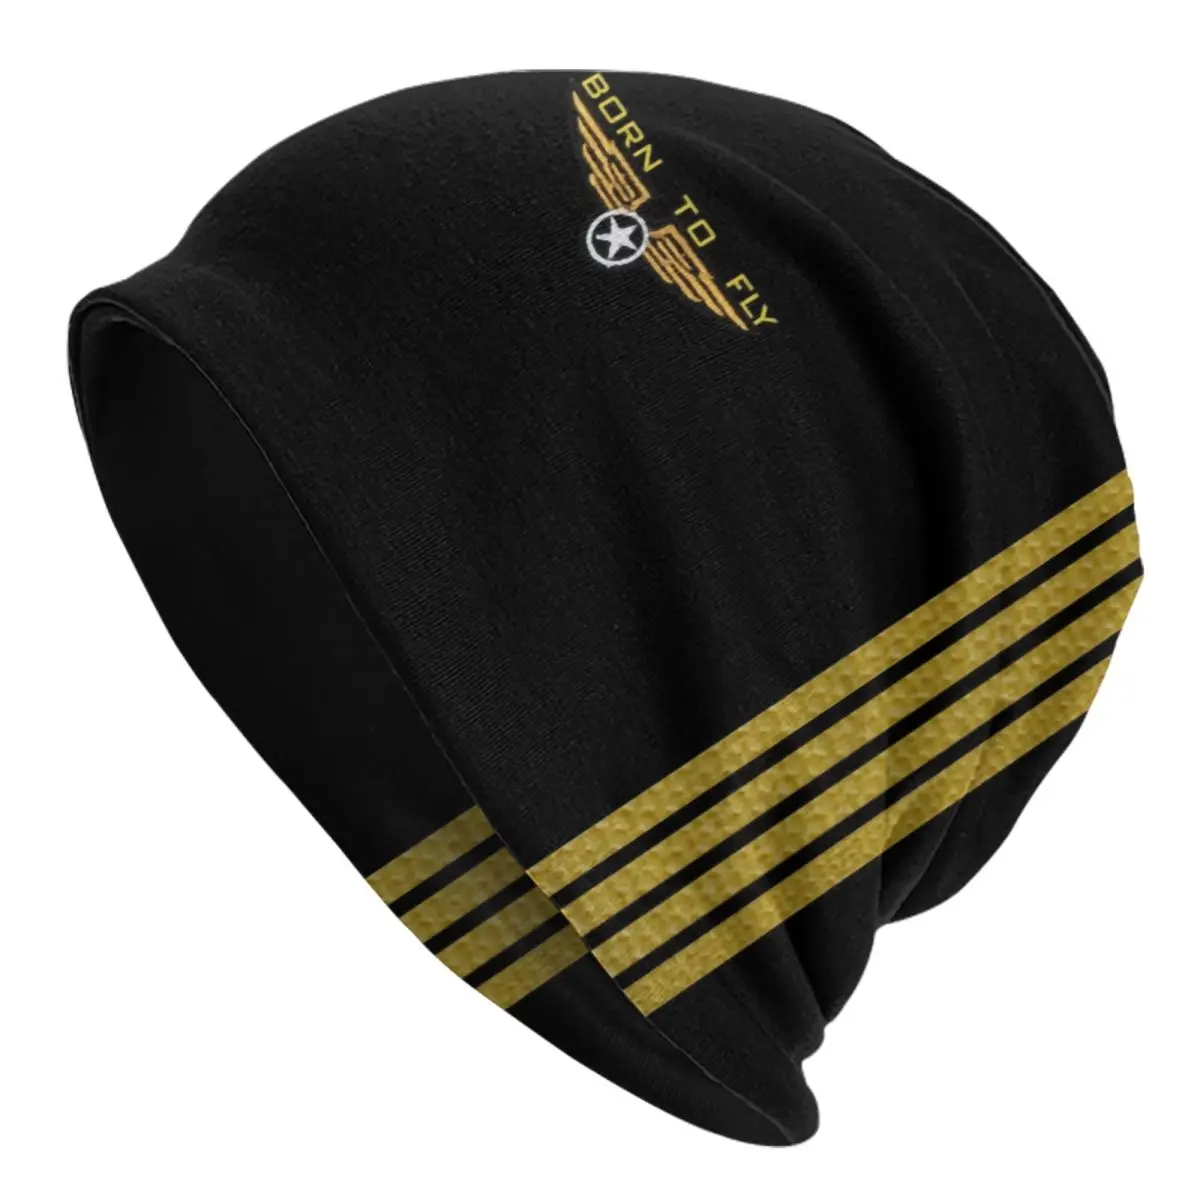 

Шапка-Авиатор Born To Fly, вязаные шапки для мужчин и женщин, мужские шапки в стиле хип-хоп, унисекс, летающие авиаторы, теплые зимние шапки, шапка